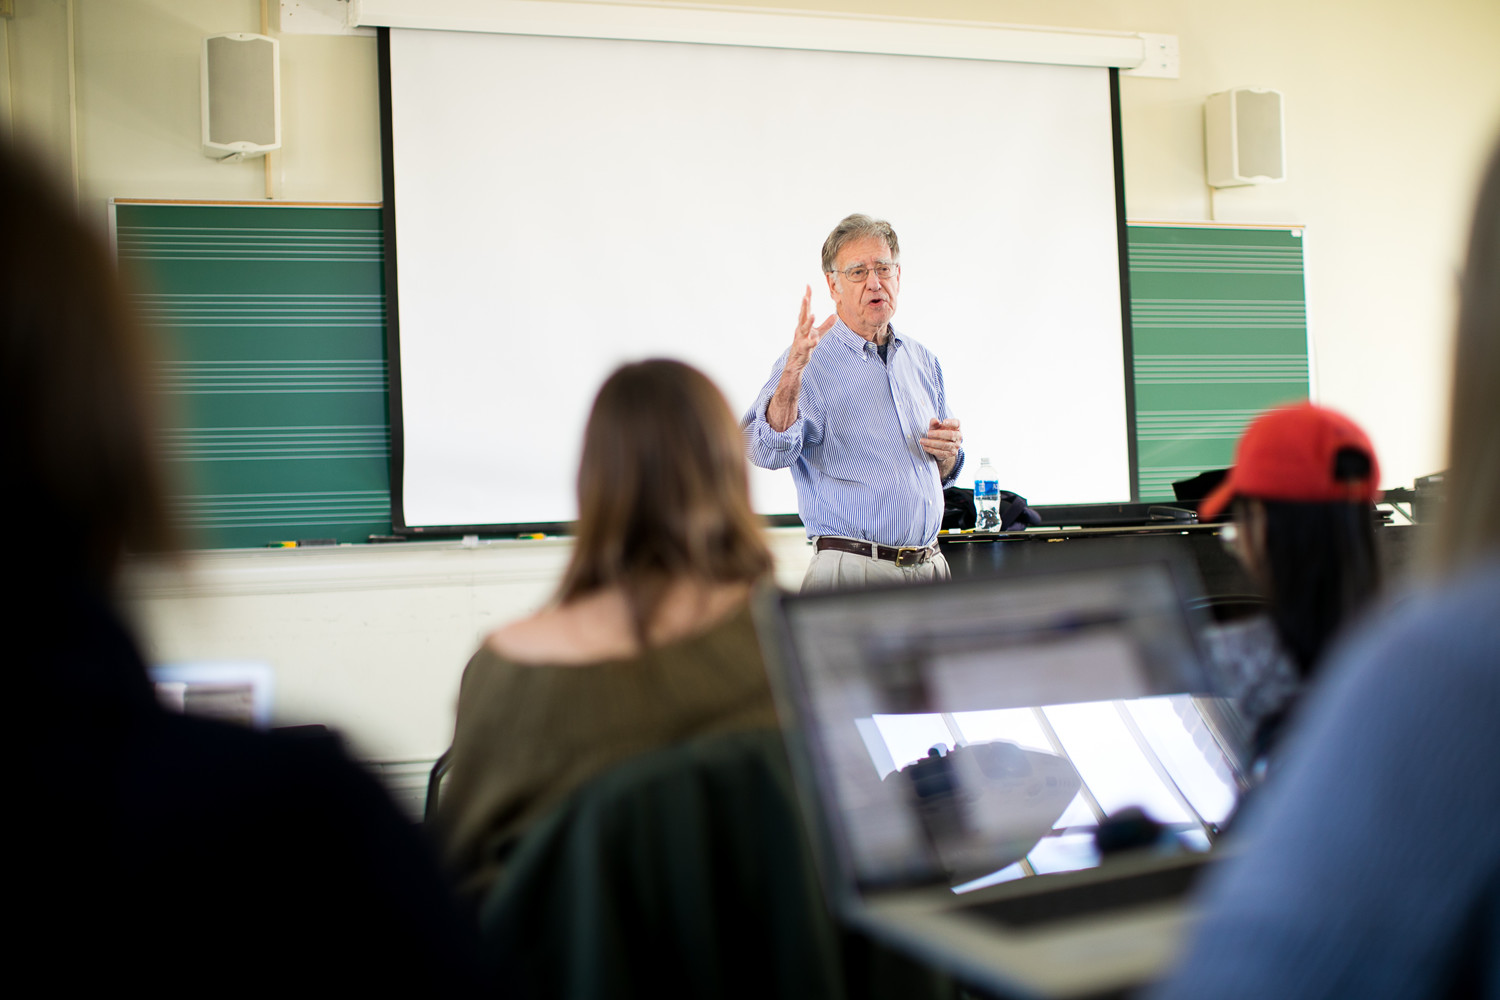 Raymond Scheppach teaching a class